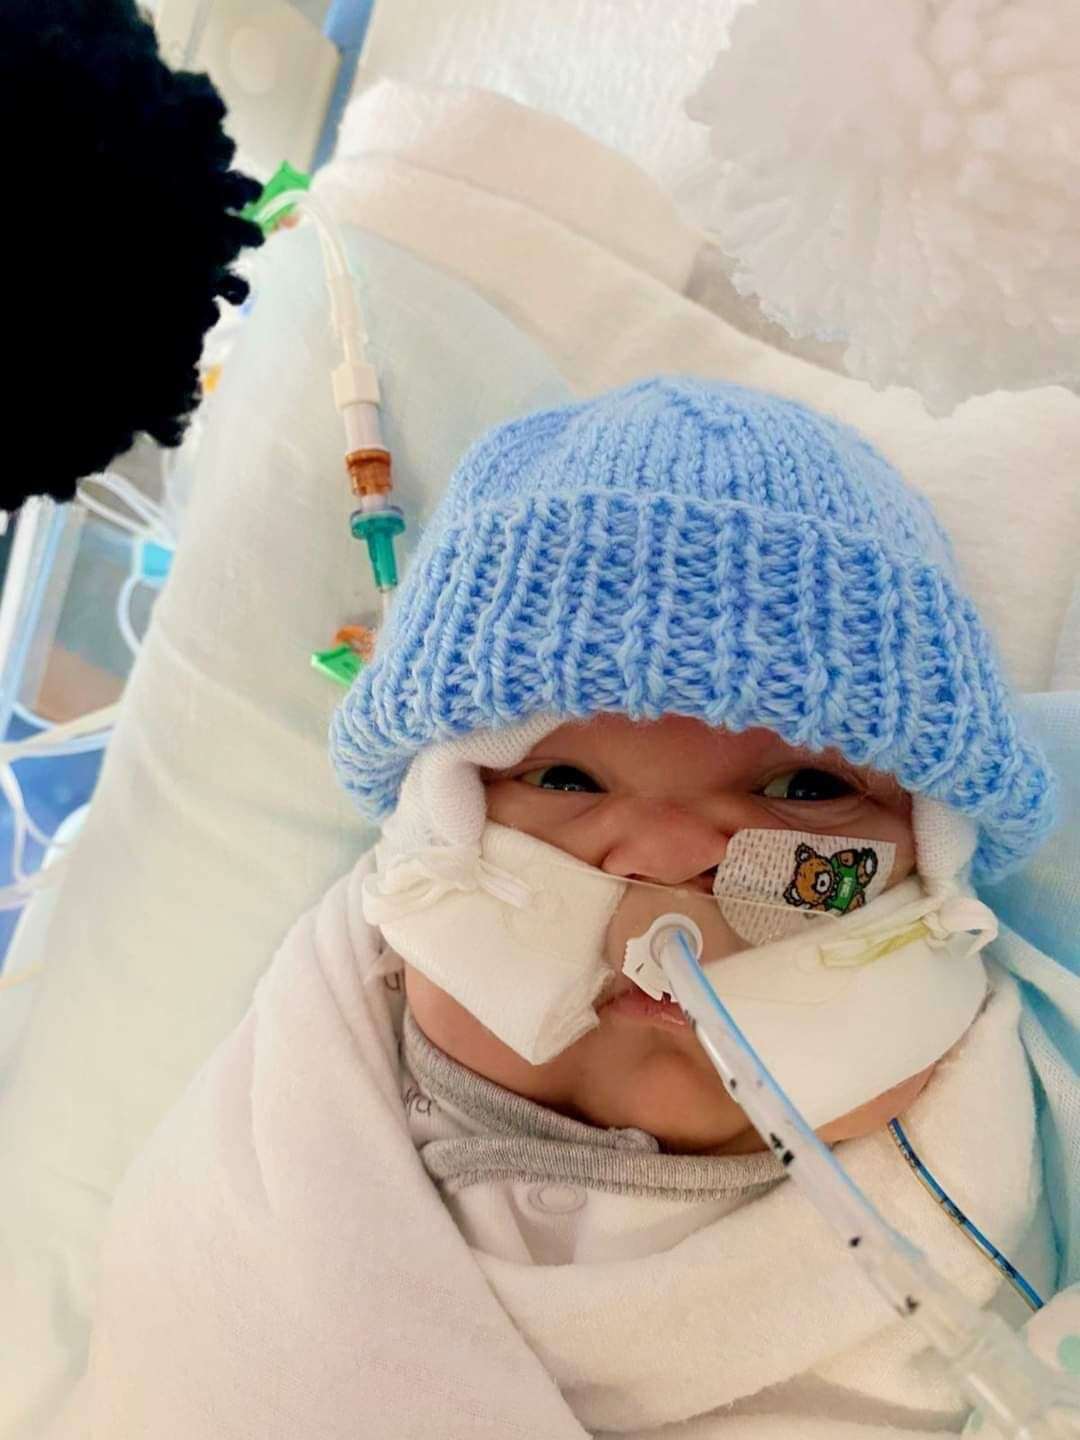 Oliver-Cash battled on after being born prematurely at 23 weeks